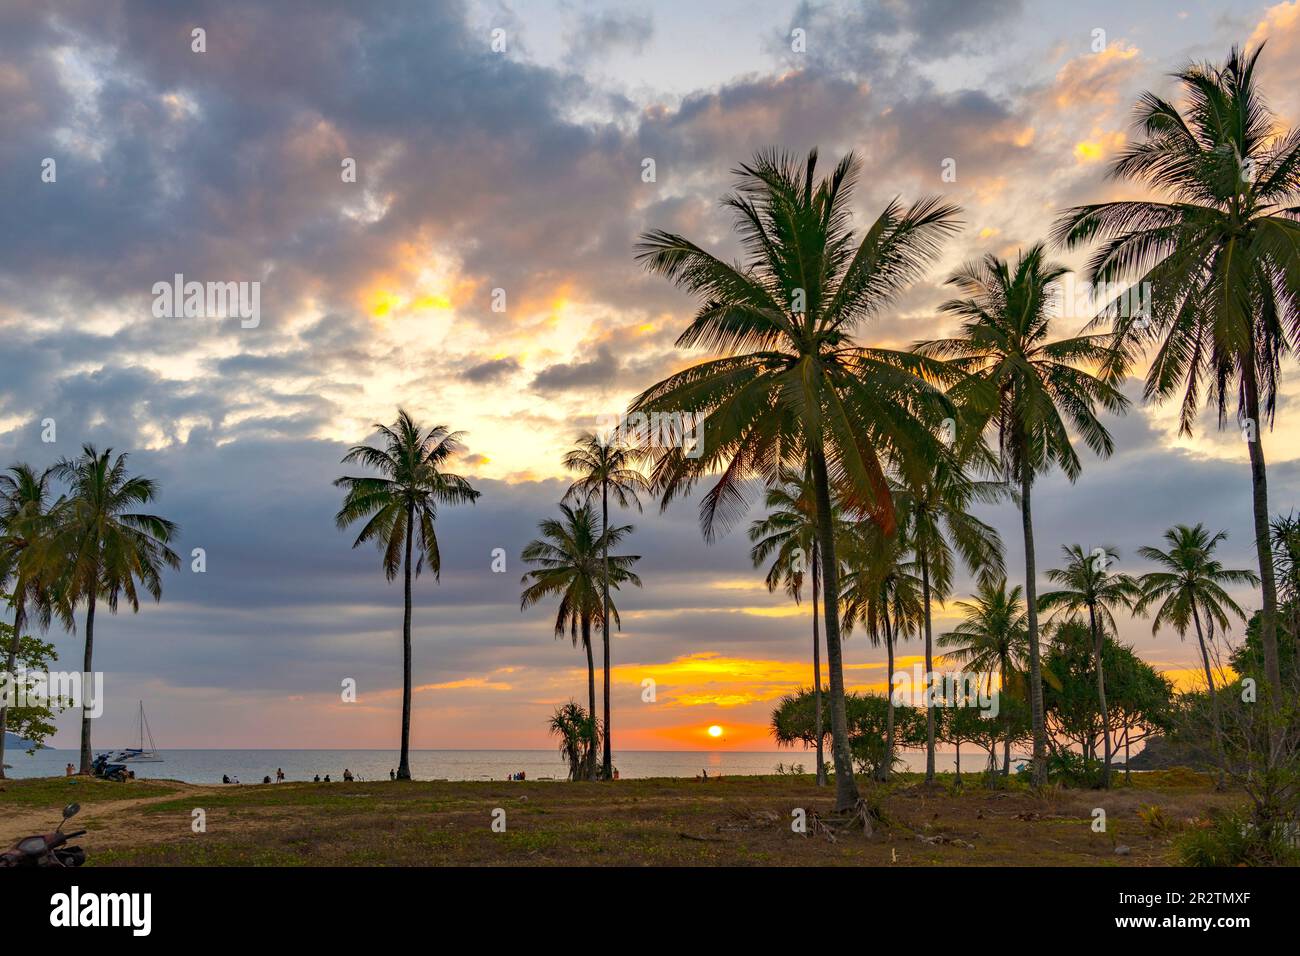 Sonnenuntergang am Strand Farang oder Charlie Beach auf der Insel Koh Mook in der Andamanensee, Thailand, Asien   |   Suset at Farang or Charlie Beach Stock Photo